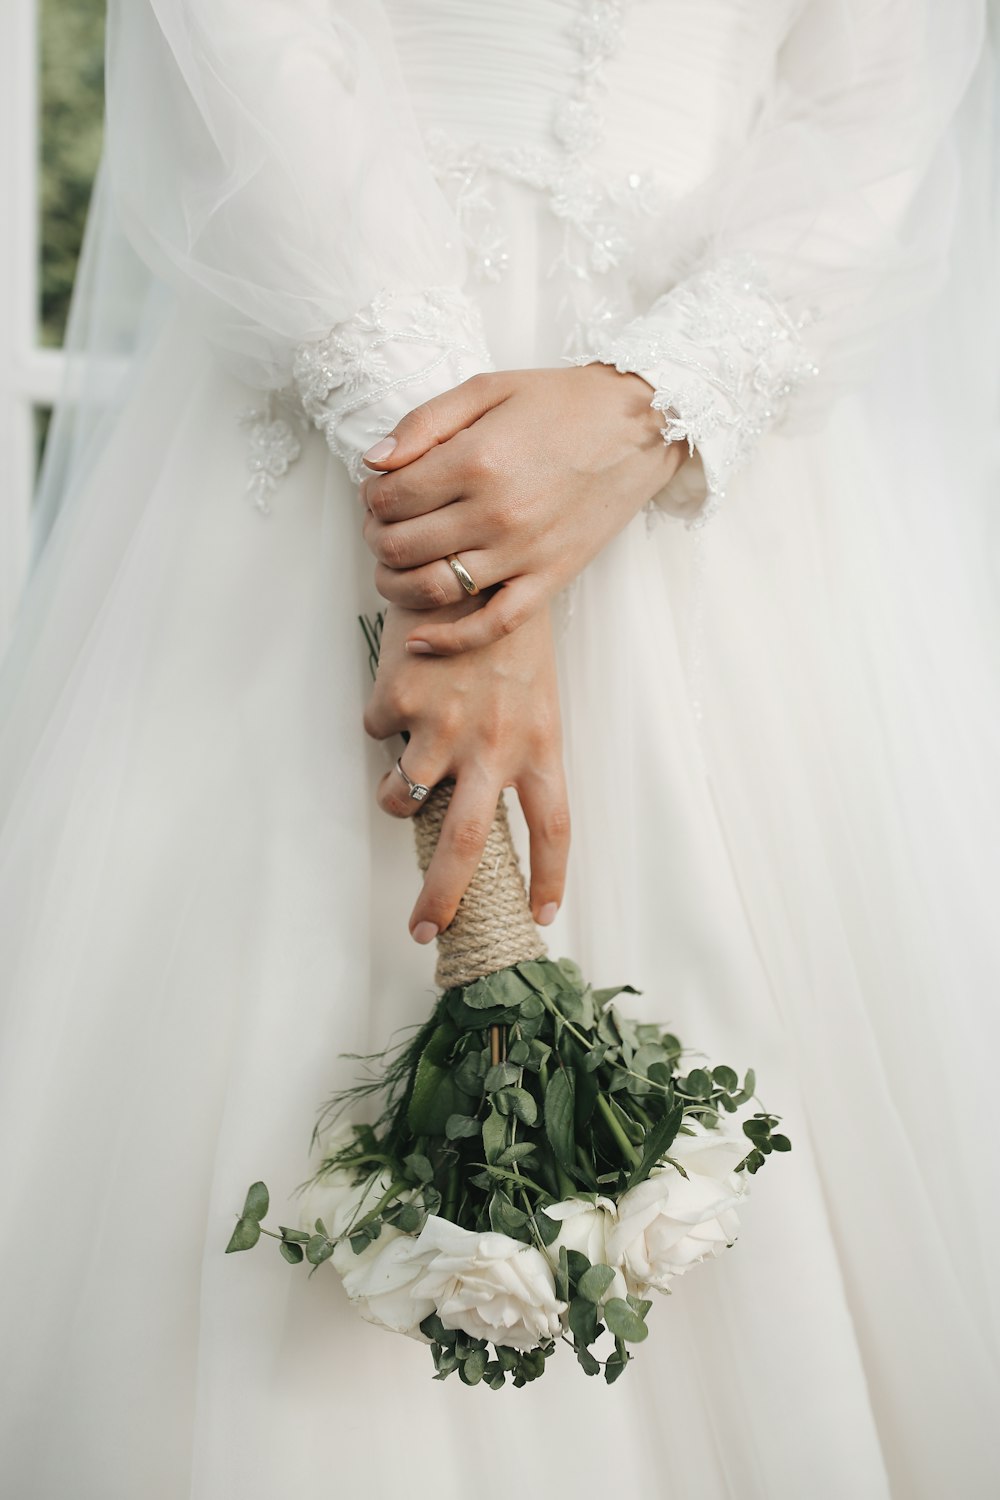 Una persona con un vestido blanco sosteniendo las manos juntas